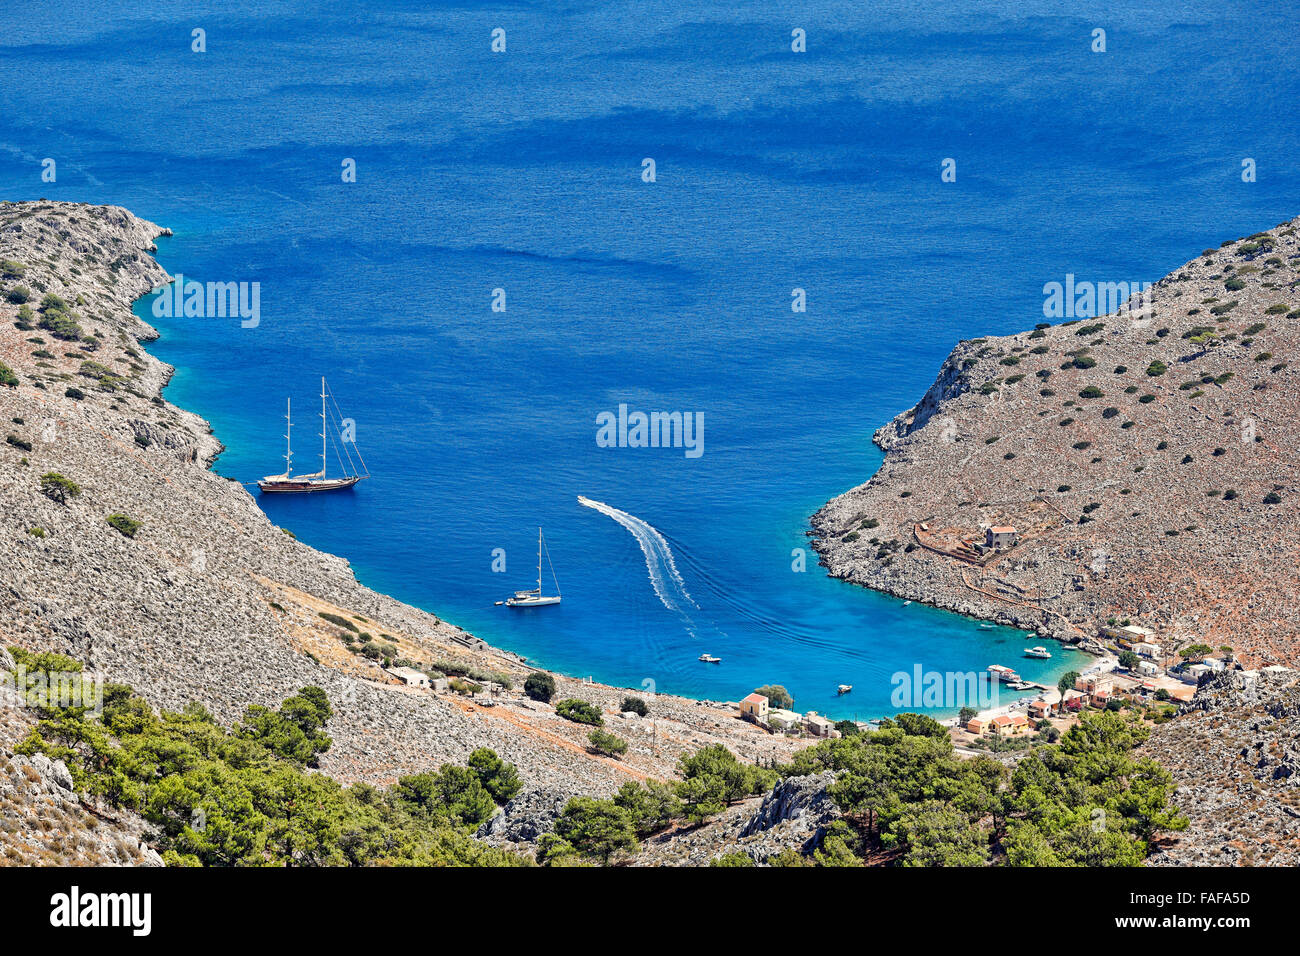 Marathounta beach de l'île de Symi, Grèce Banque D'Images